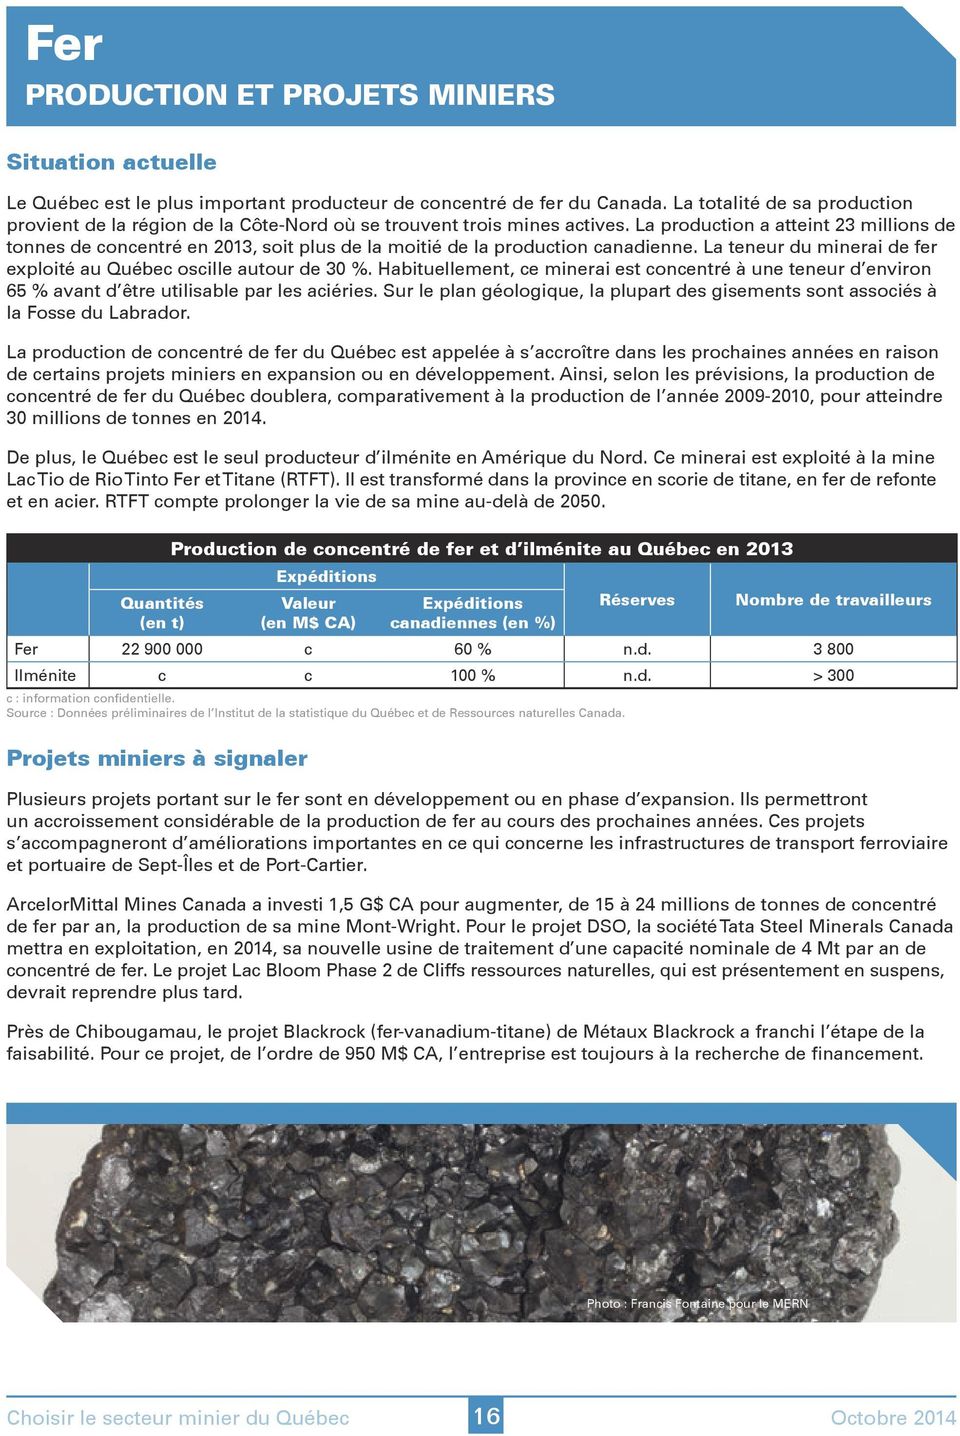 La production a atteint 23 millions de tonnes de concentré en 2013, soit plus de la moitié de la production canadienne. La teneur du minerai de fer exploité au Québec oscille autour de 30 %.